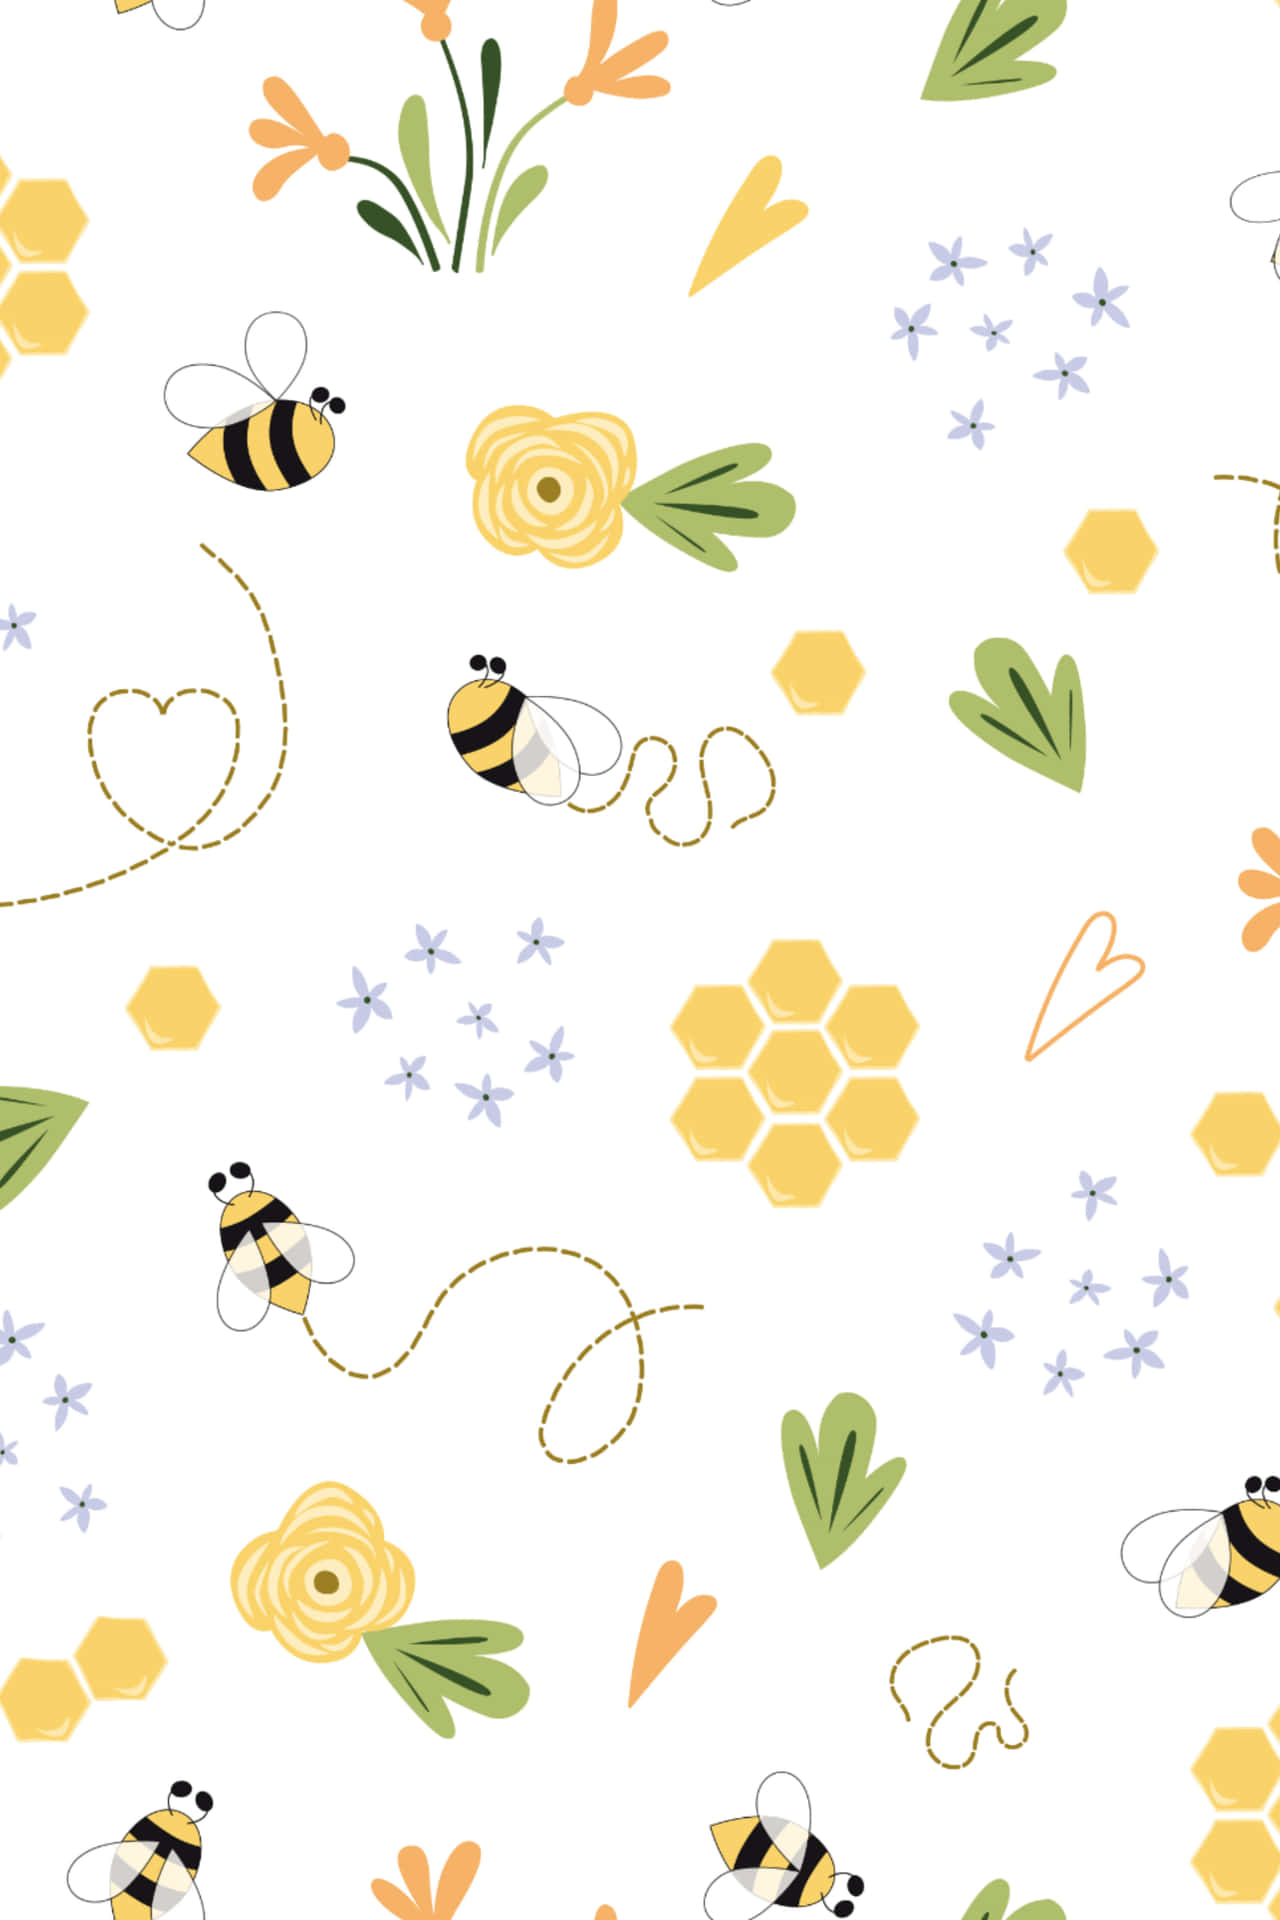 Sød og følsom vintage bi, hvilende forsigtigt på en lys gul blomst. Wallpaper